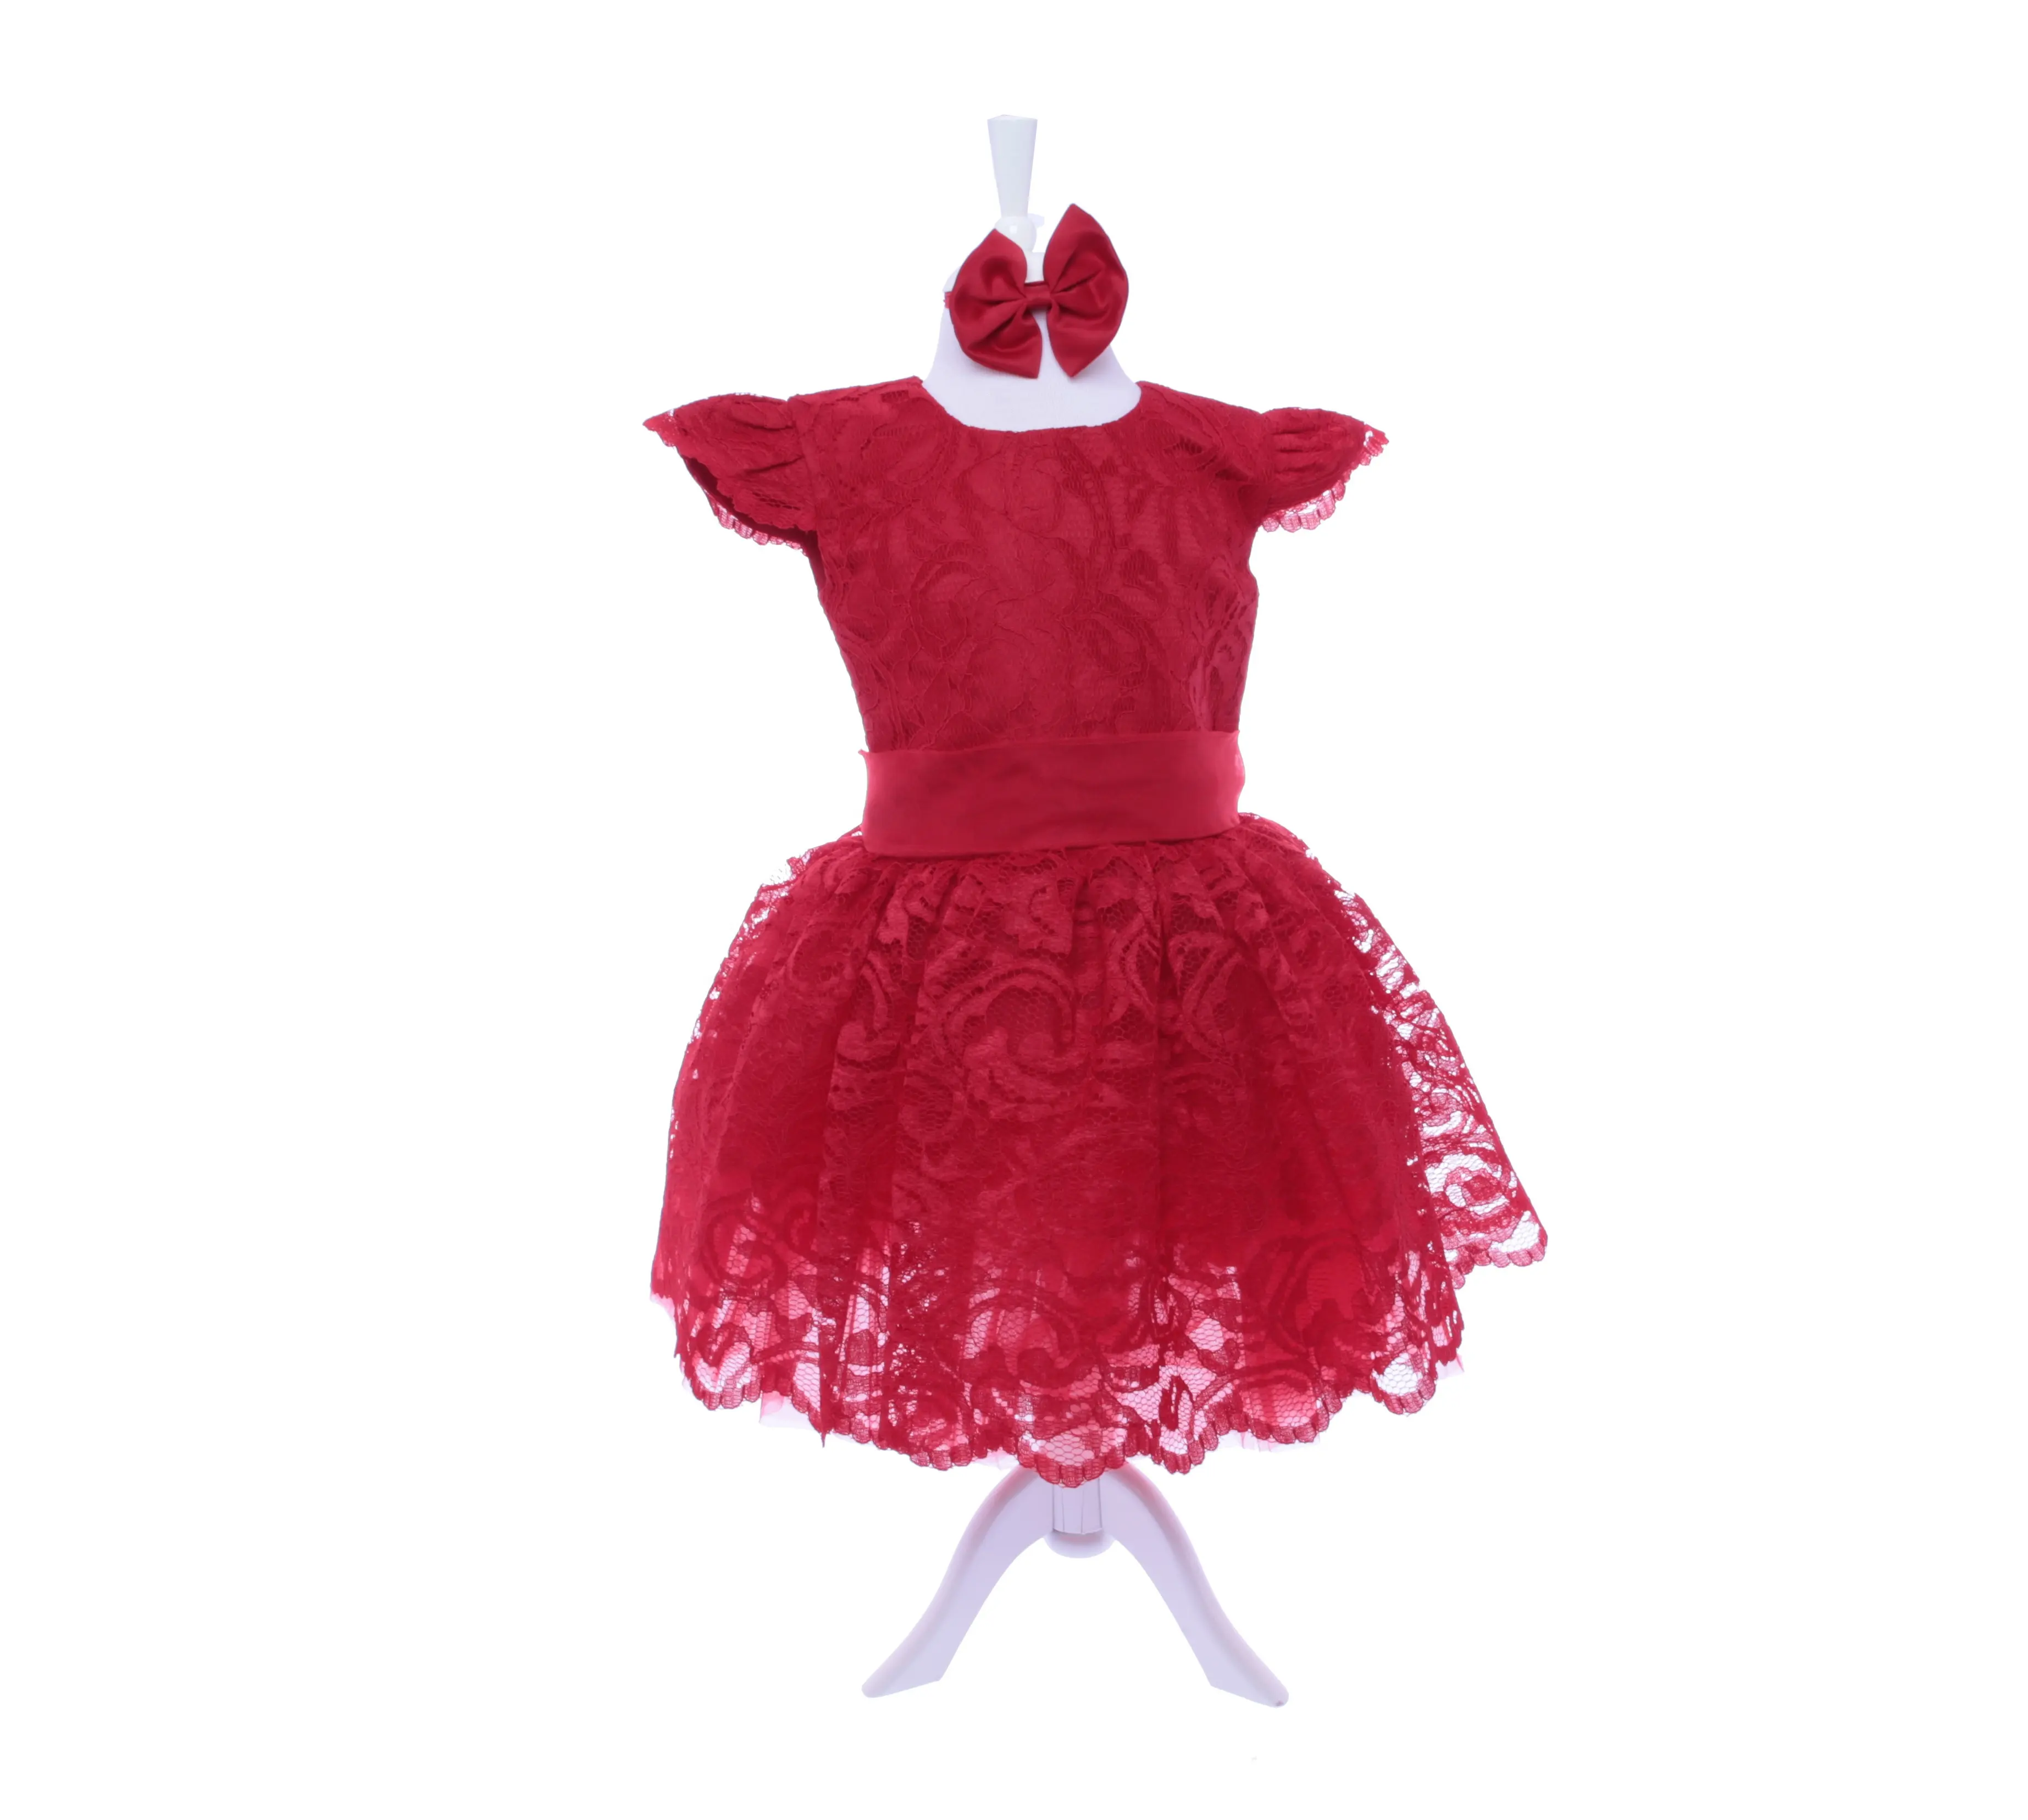 Bambini personalizzati all'ingrosso bambini moderni Lux neonato nuovo Design festa matrimonio compleanno pizzo rosso di alta qualità neonate vestito